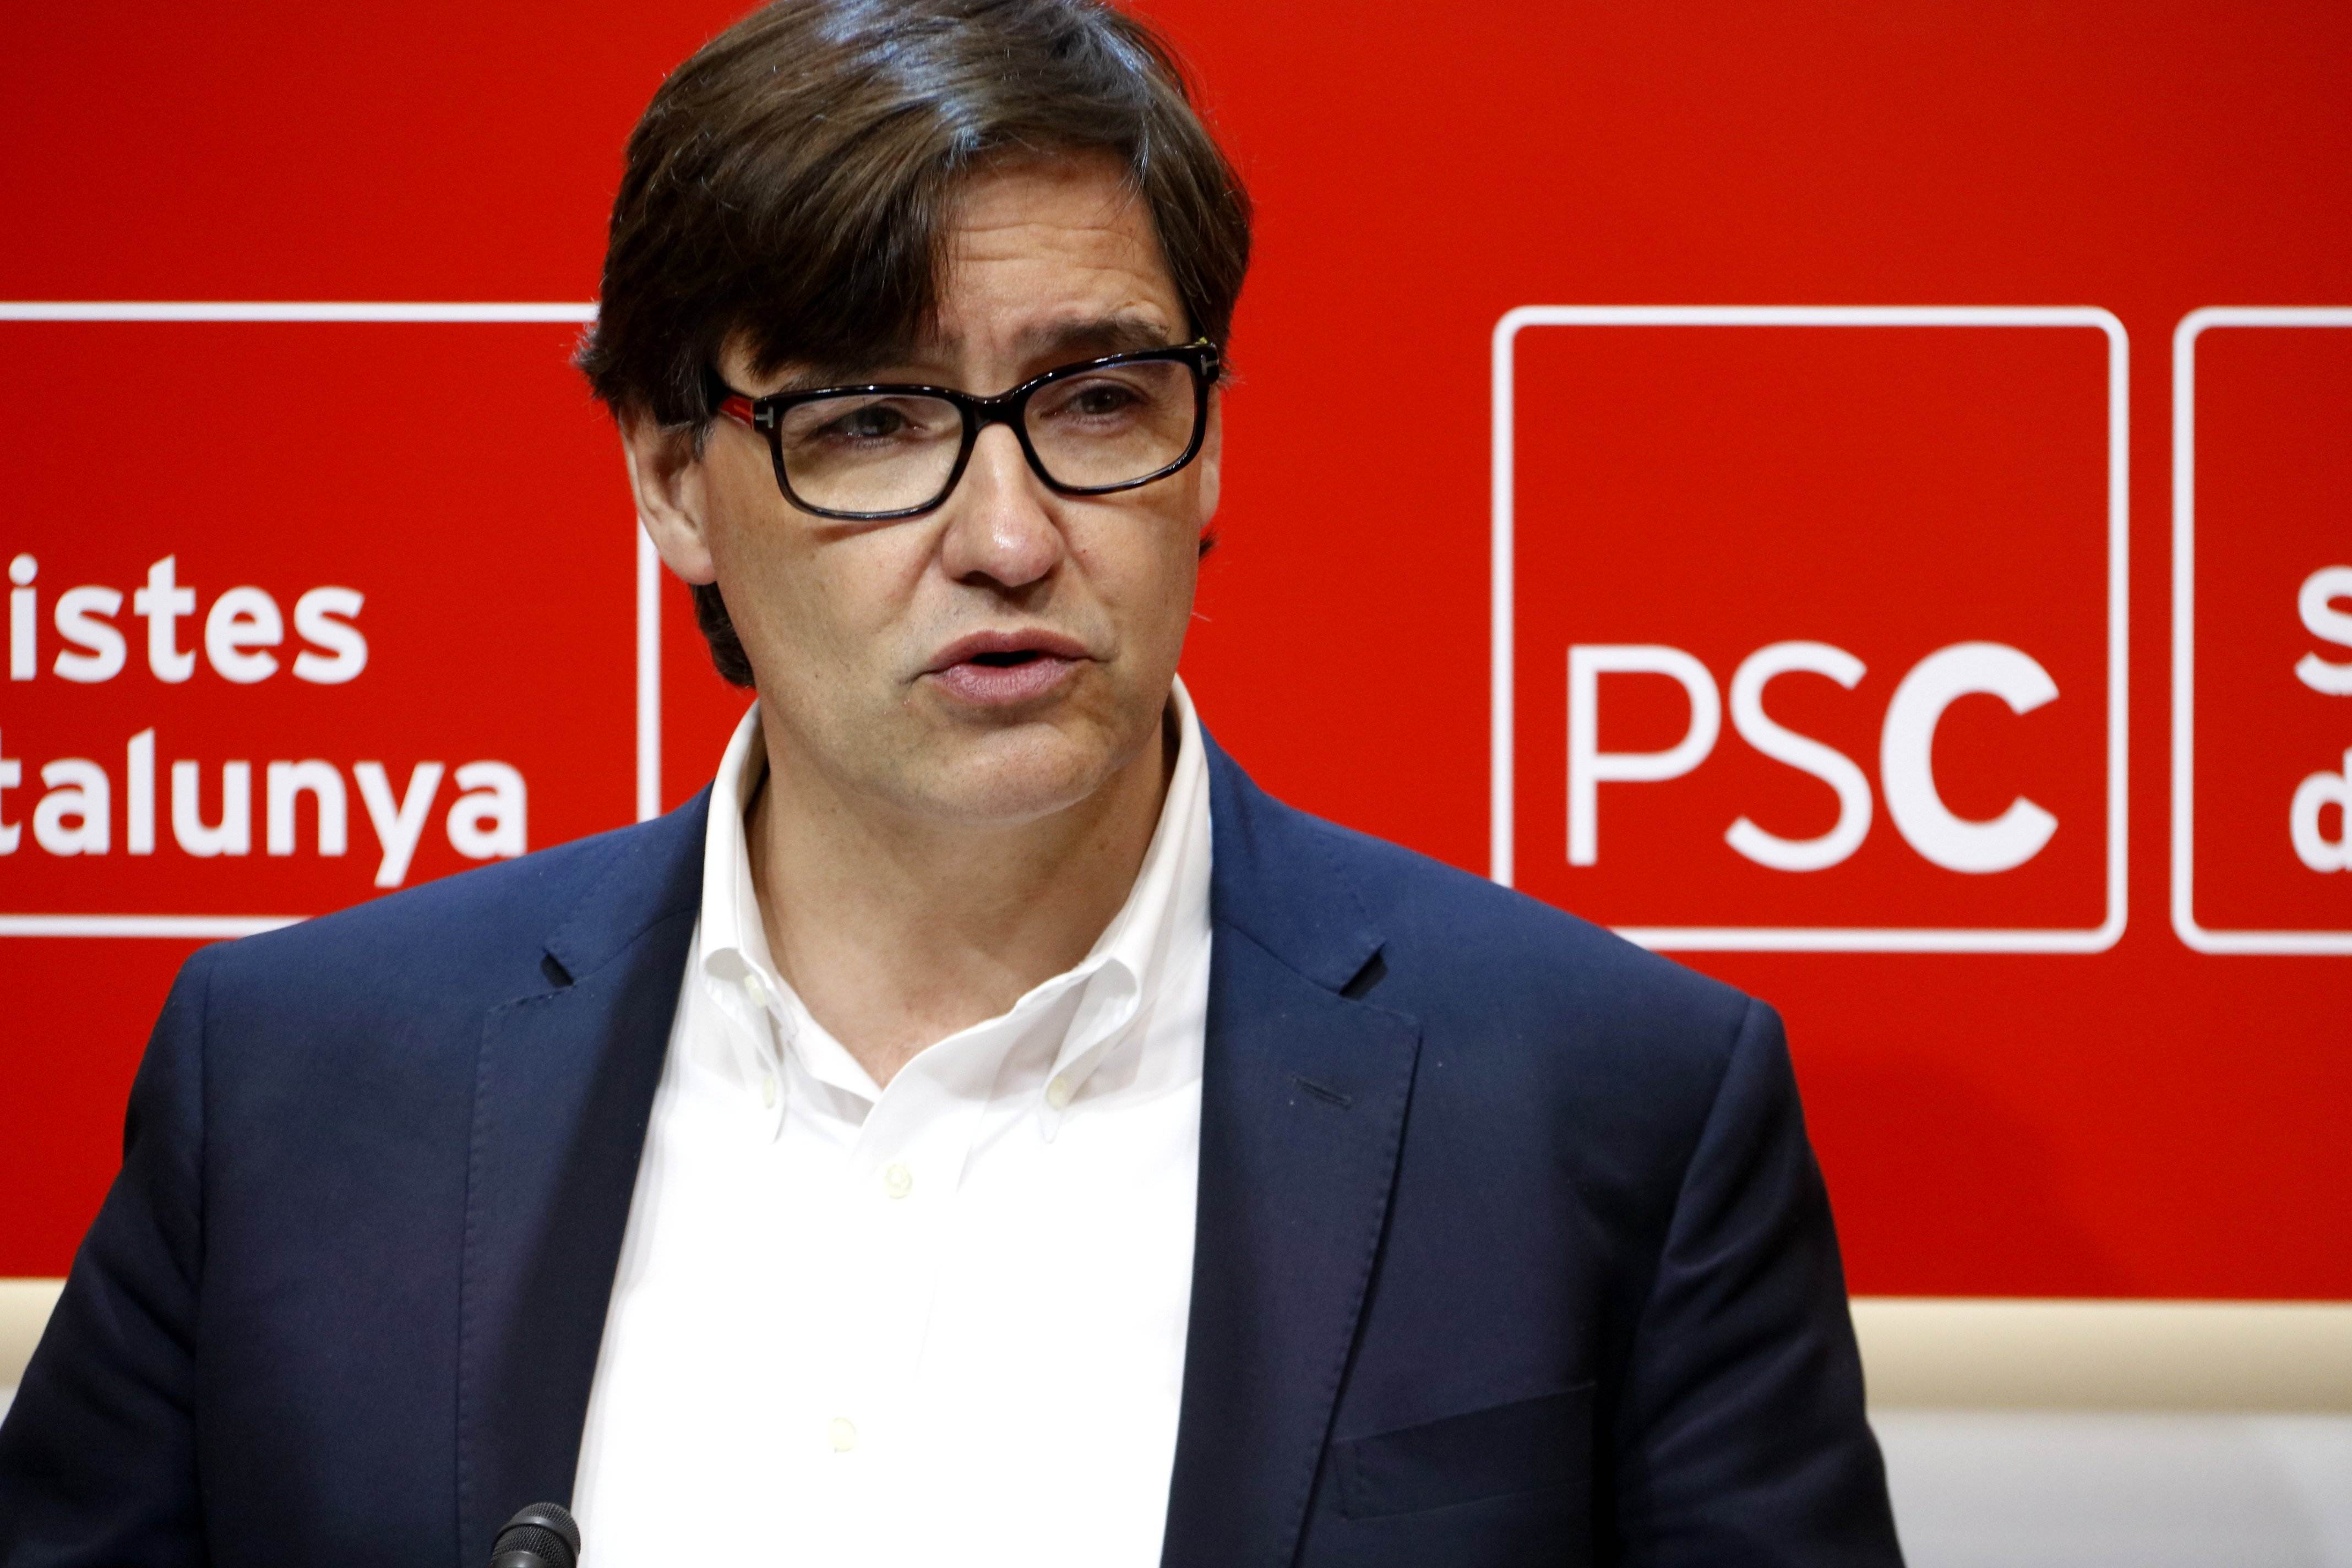 El PSC avala la línea dura de Pedro Sánchez